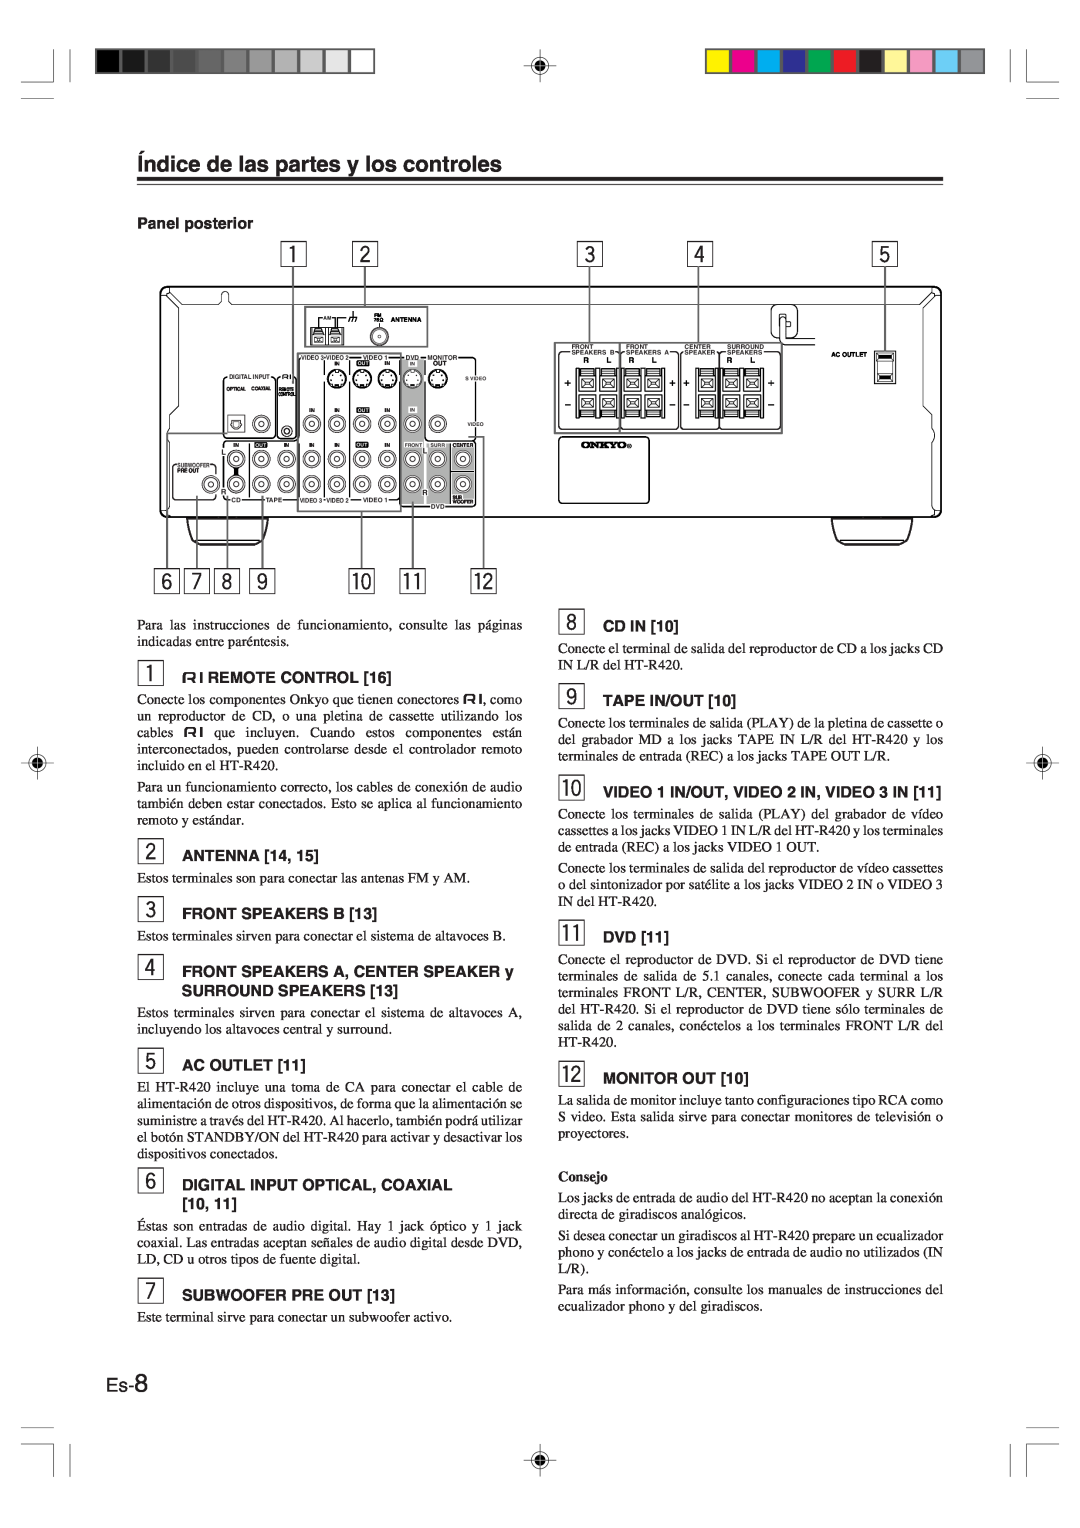 Onkyo HT-R420 manual Es-8, 6 7 8 9 p q w, Índice de las partes y los controles 